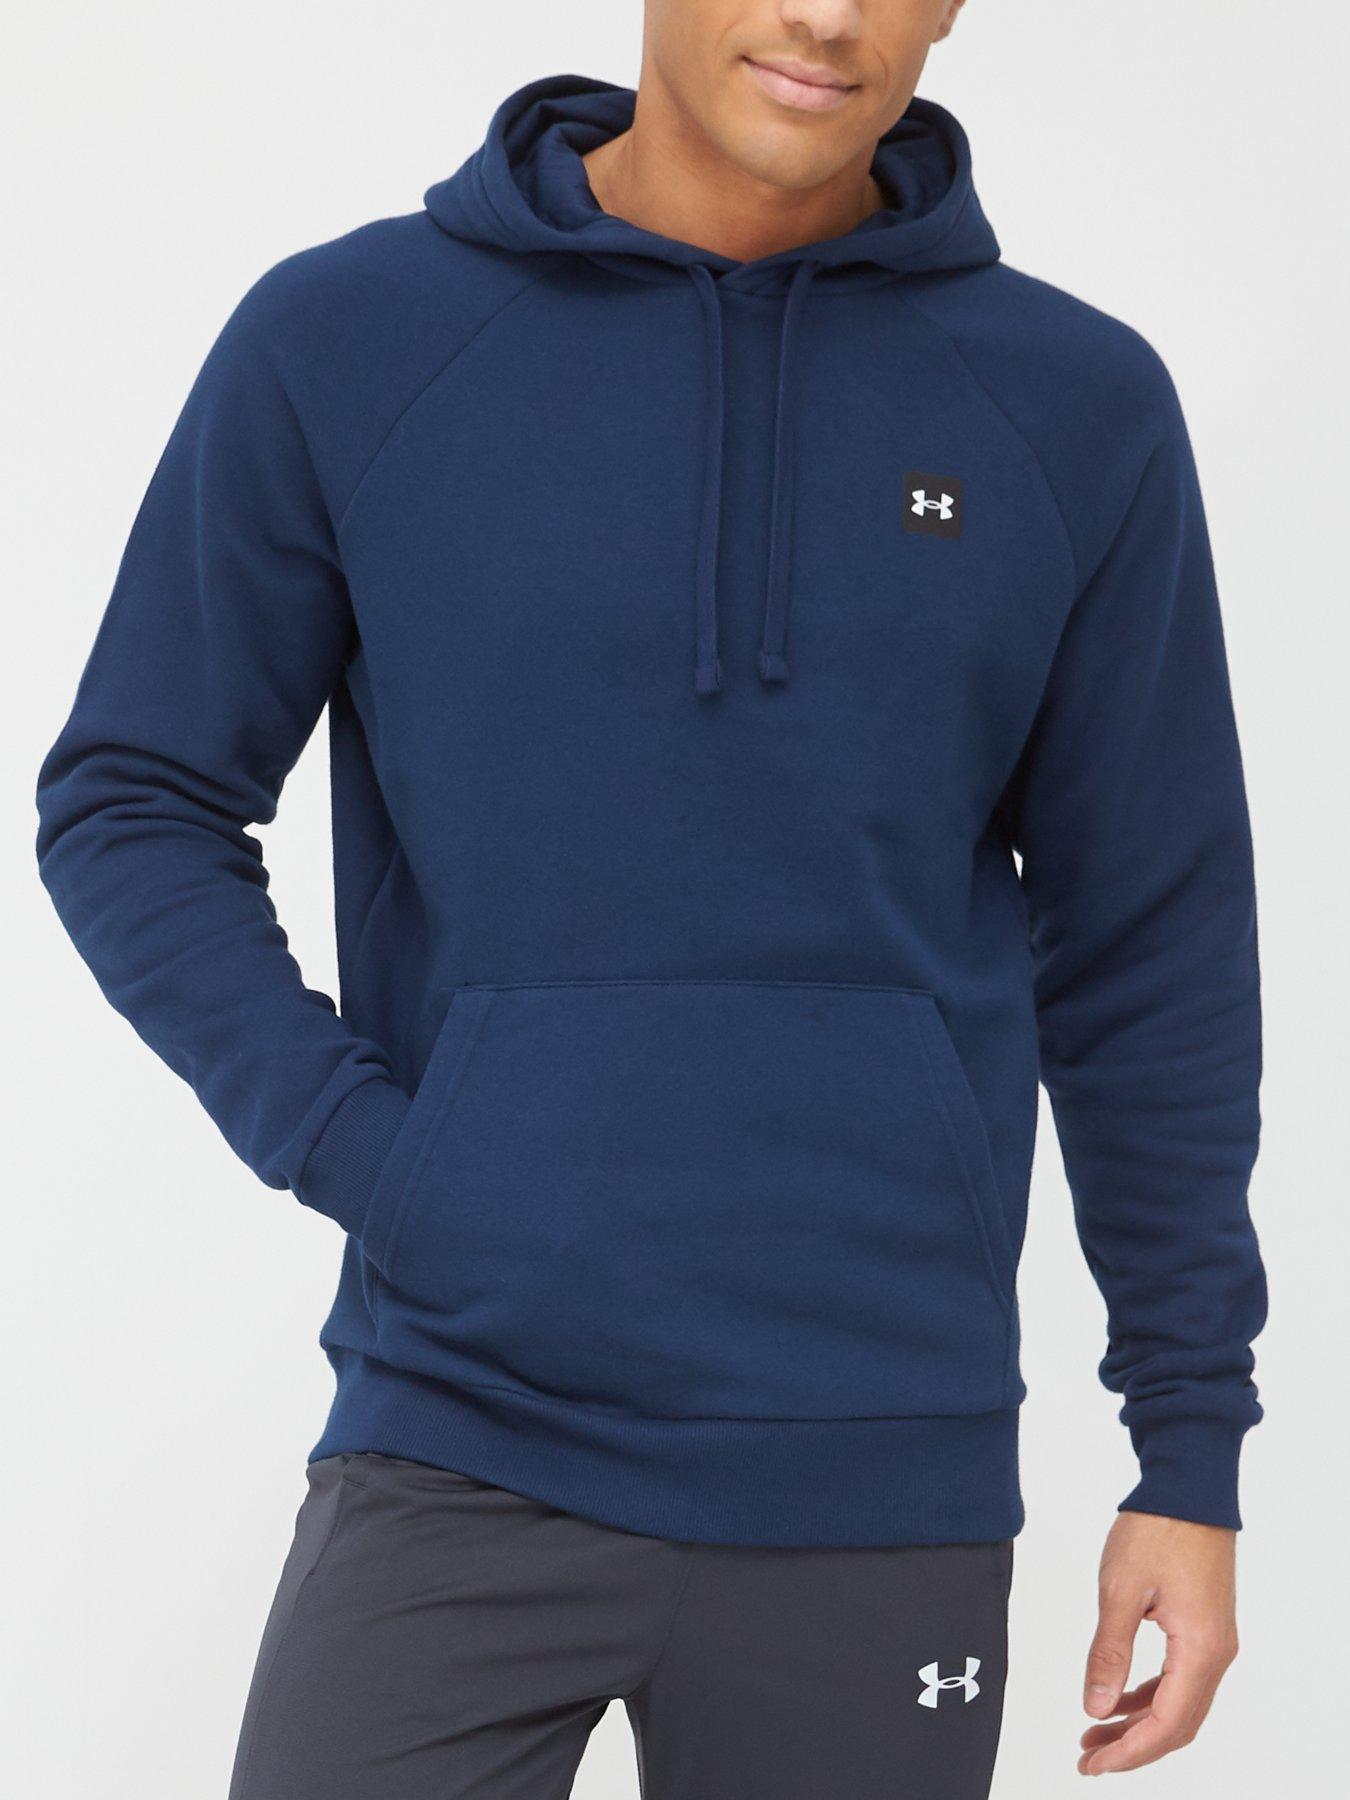 Men's UNDER ARMOUR Hoodies, Sweatshirts Zip Up